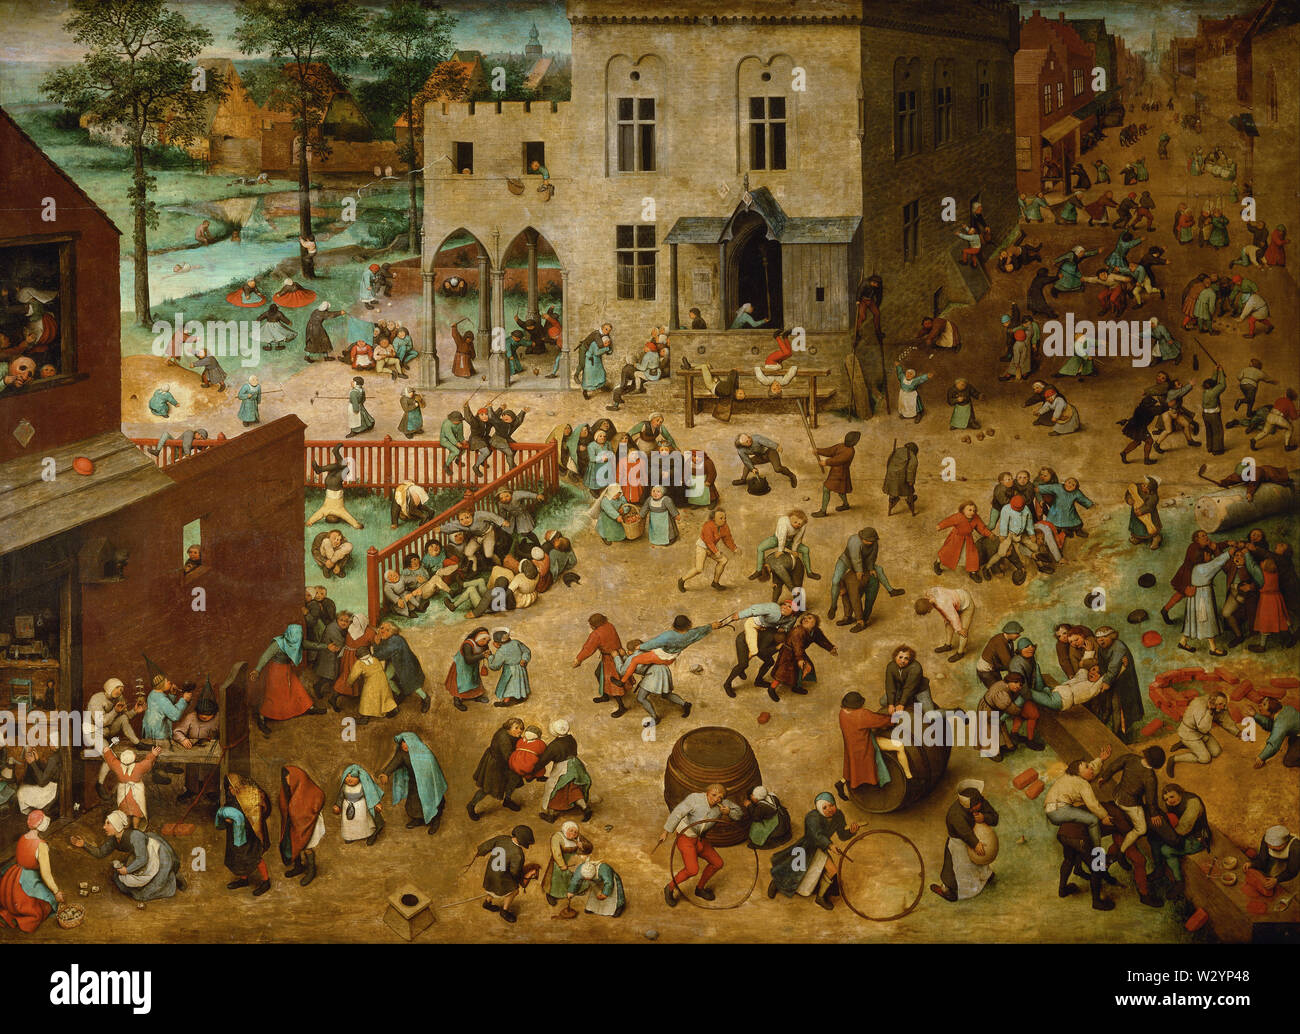 Spiele der Kinder (1560) Gemälde von Pieter Bruegel (Brueghel) der Ältere (I) Sehr hohe Qualität und Auflösung Stockfoto